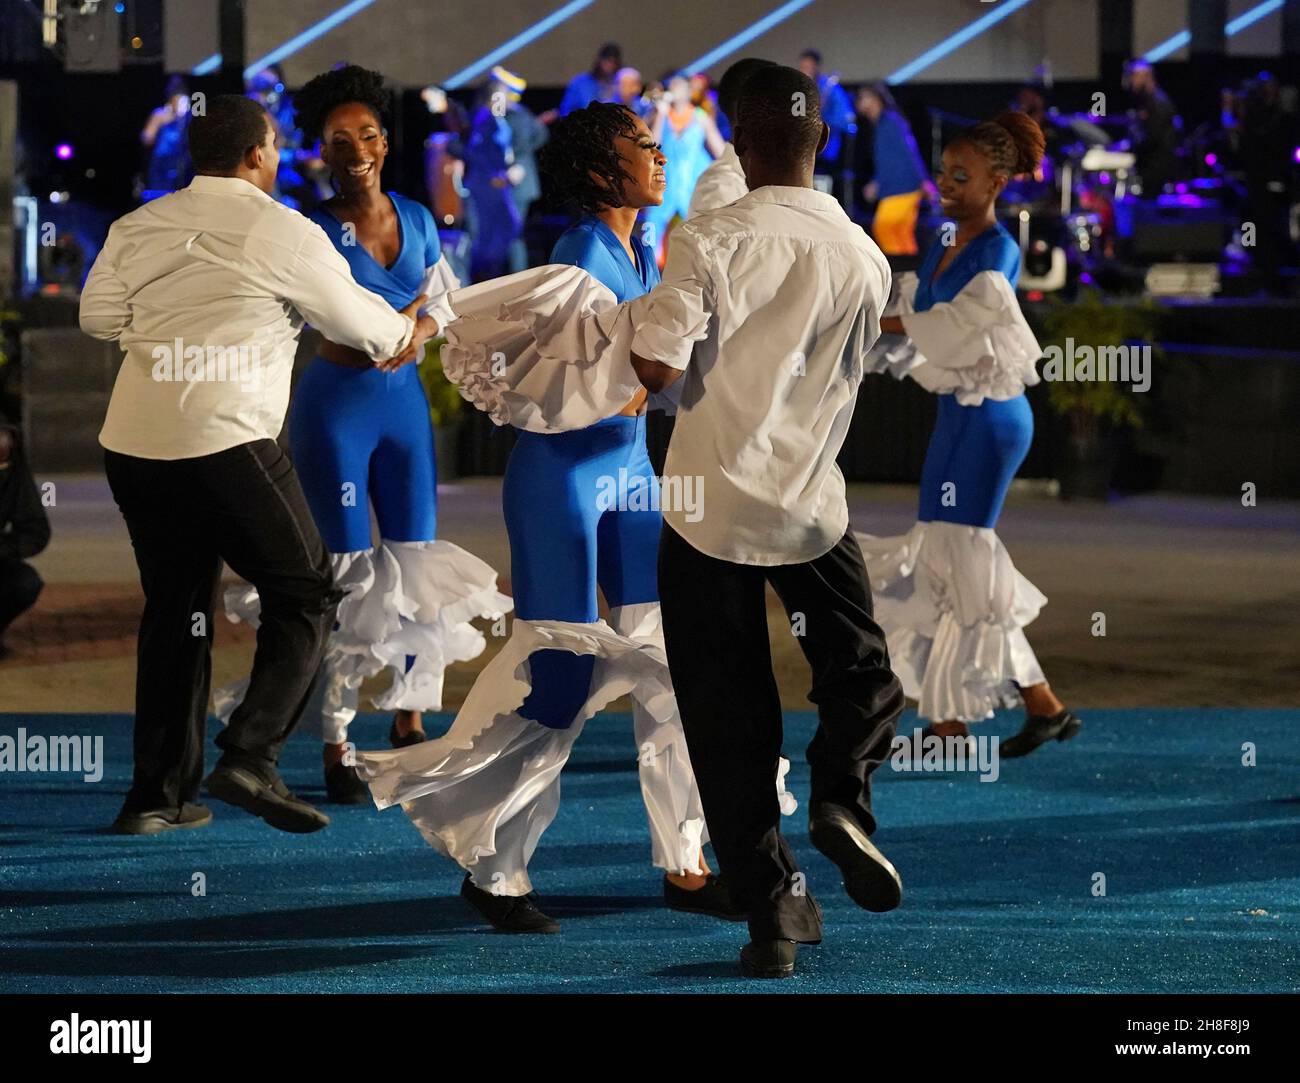 Tänzer treten auf dem Heroes Square in Bridgetown, Barbados, vor der Zeremonie zur Einweihung des Präsidenten auf, bei der der Standard der Königin um Mitternacht gesenkt wird. Bilddatum: Montag, 29. November 2021. Stockfoto